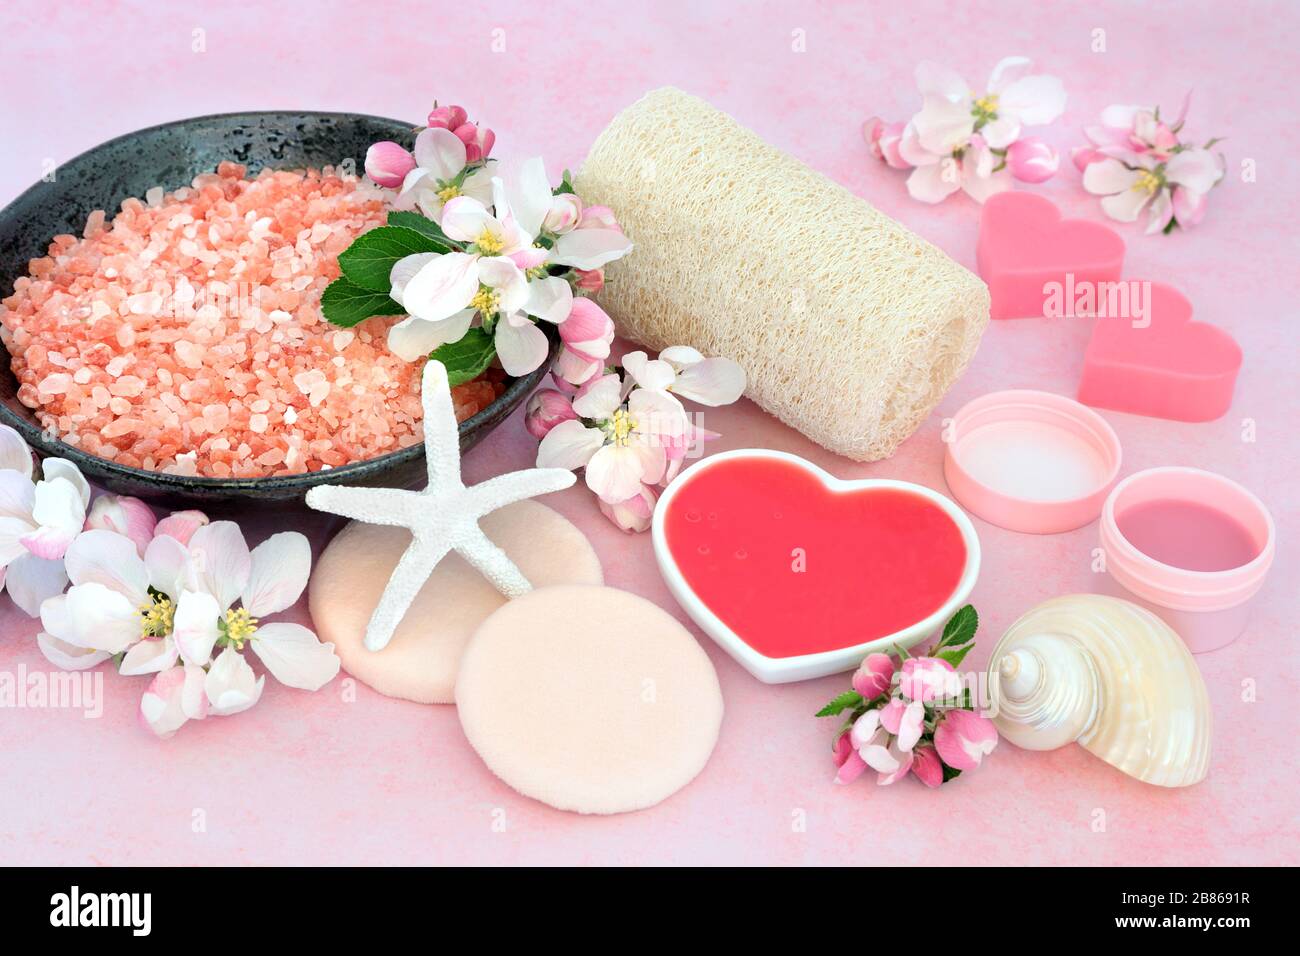 Vegane Hautpflege Spa-Beauty-Behandlung mit ehemaligen Foliation- und Reinigungsprodukten mit apfelblütenblumen auf Pink. Anti-Aging-Konzept für die Gesundheitsversorgung. Stockfoto